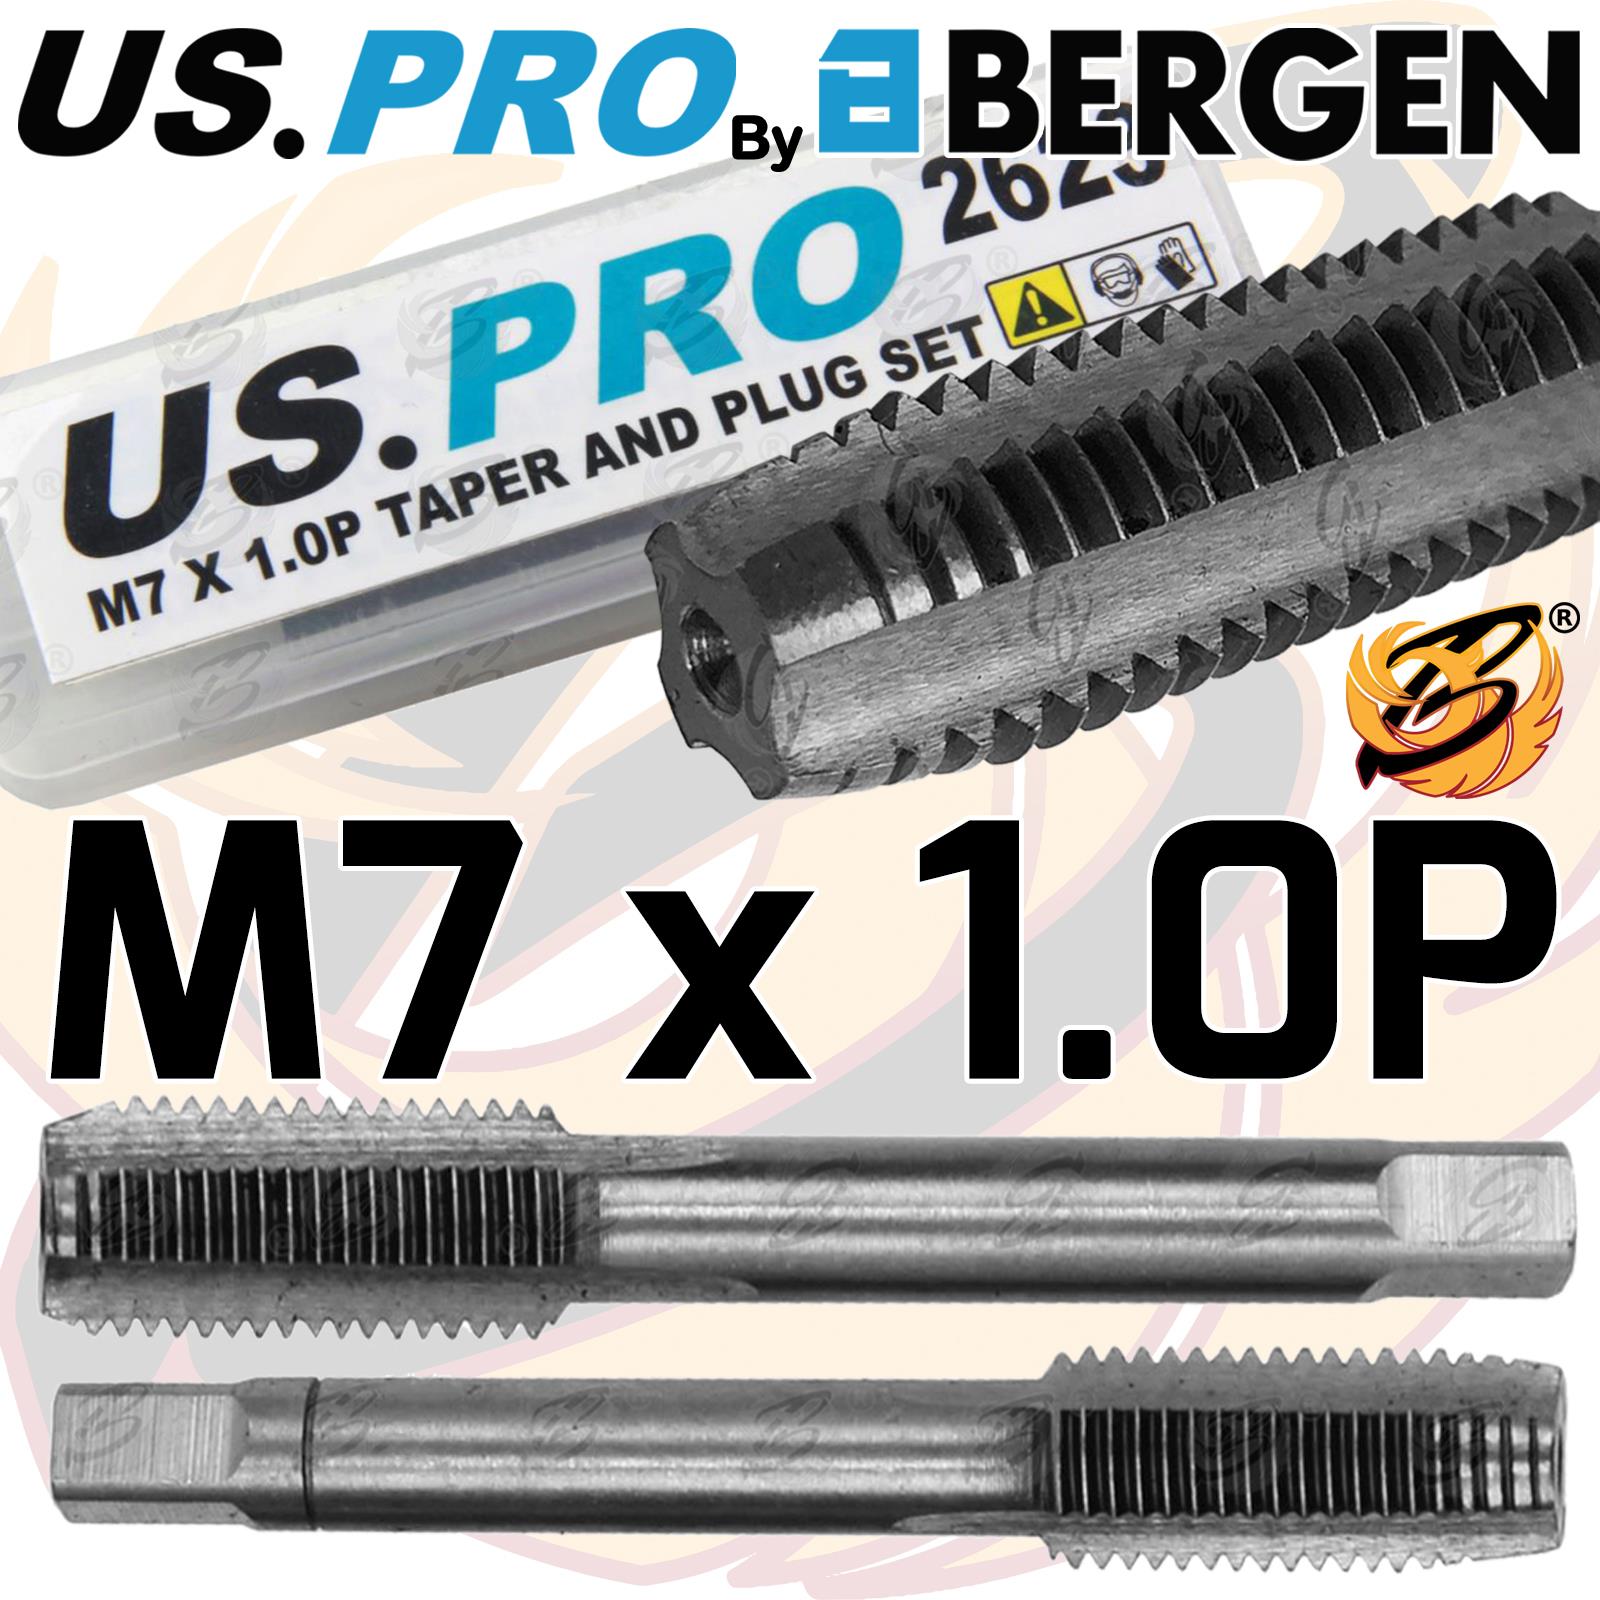 US PRO M7 x 1.0P TAPER & PLUG SET